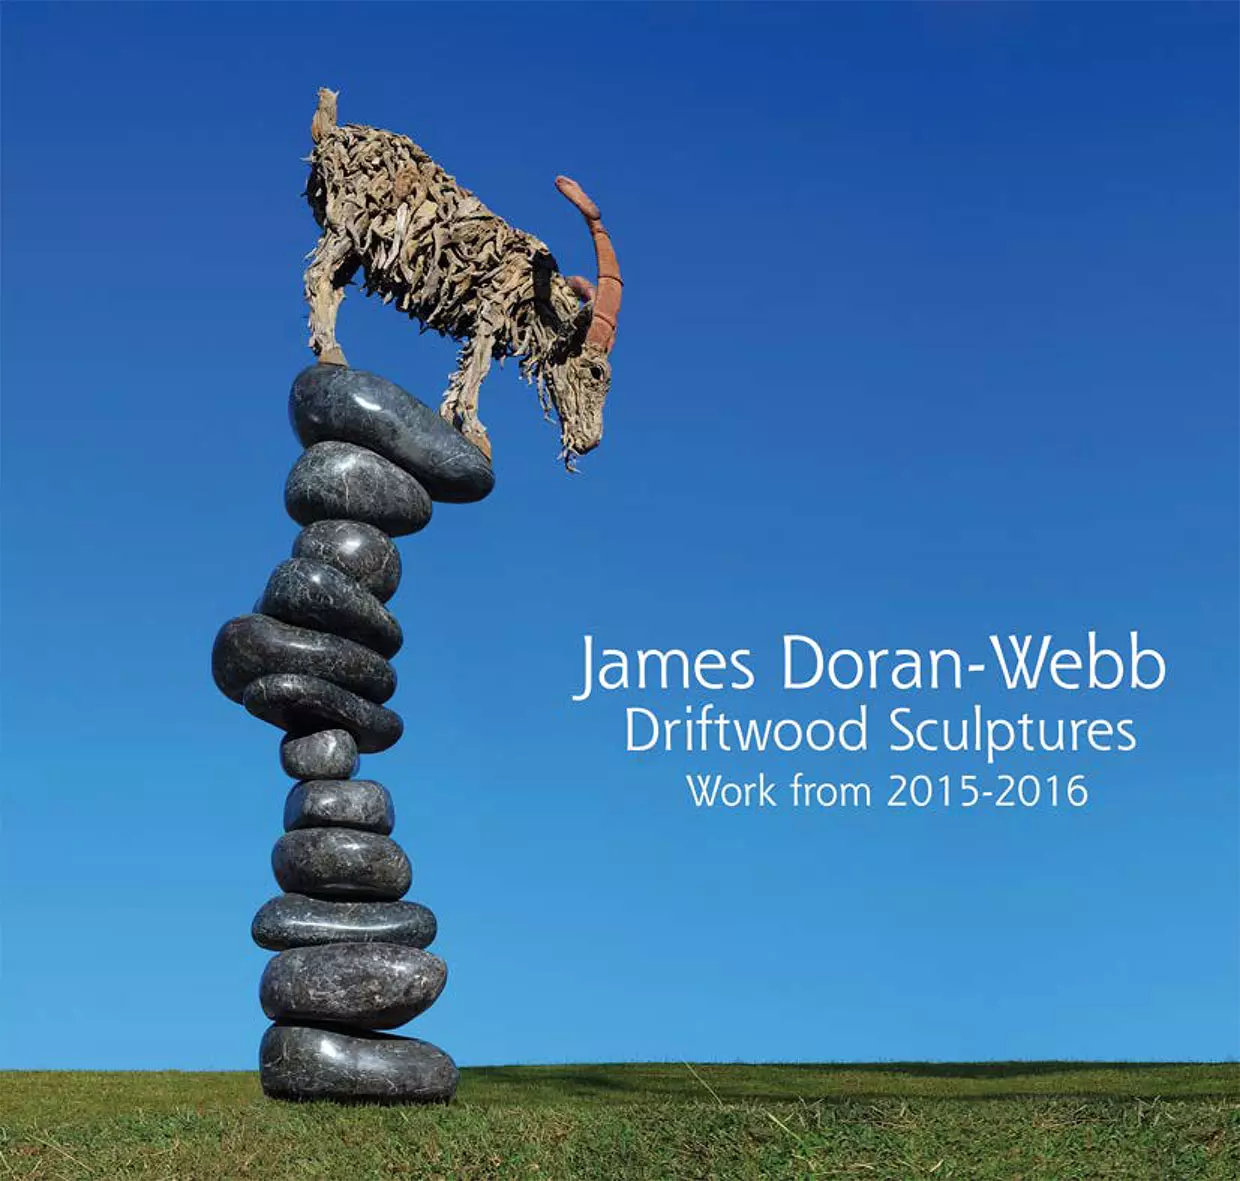 Driftwood Sculptures Work from 2015-2016